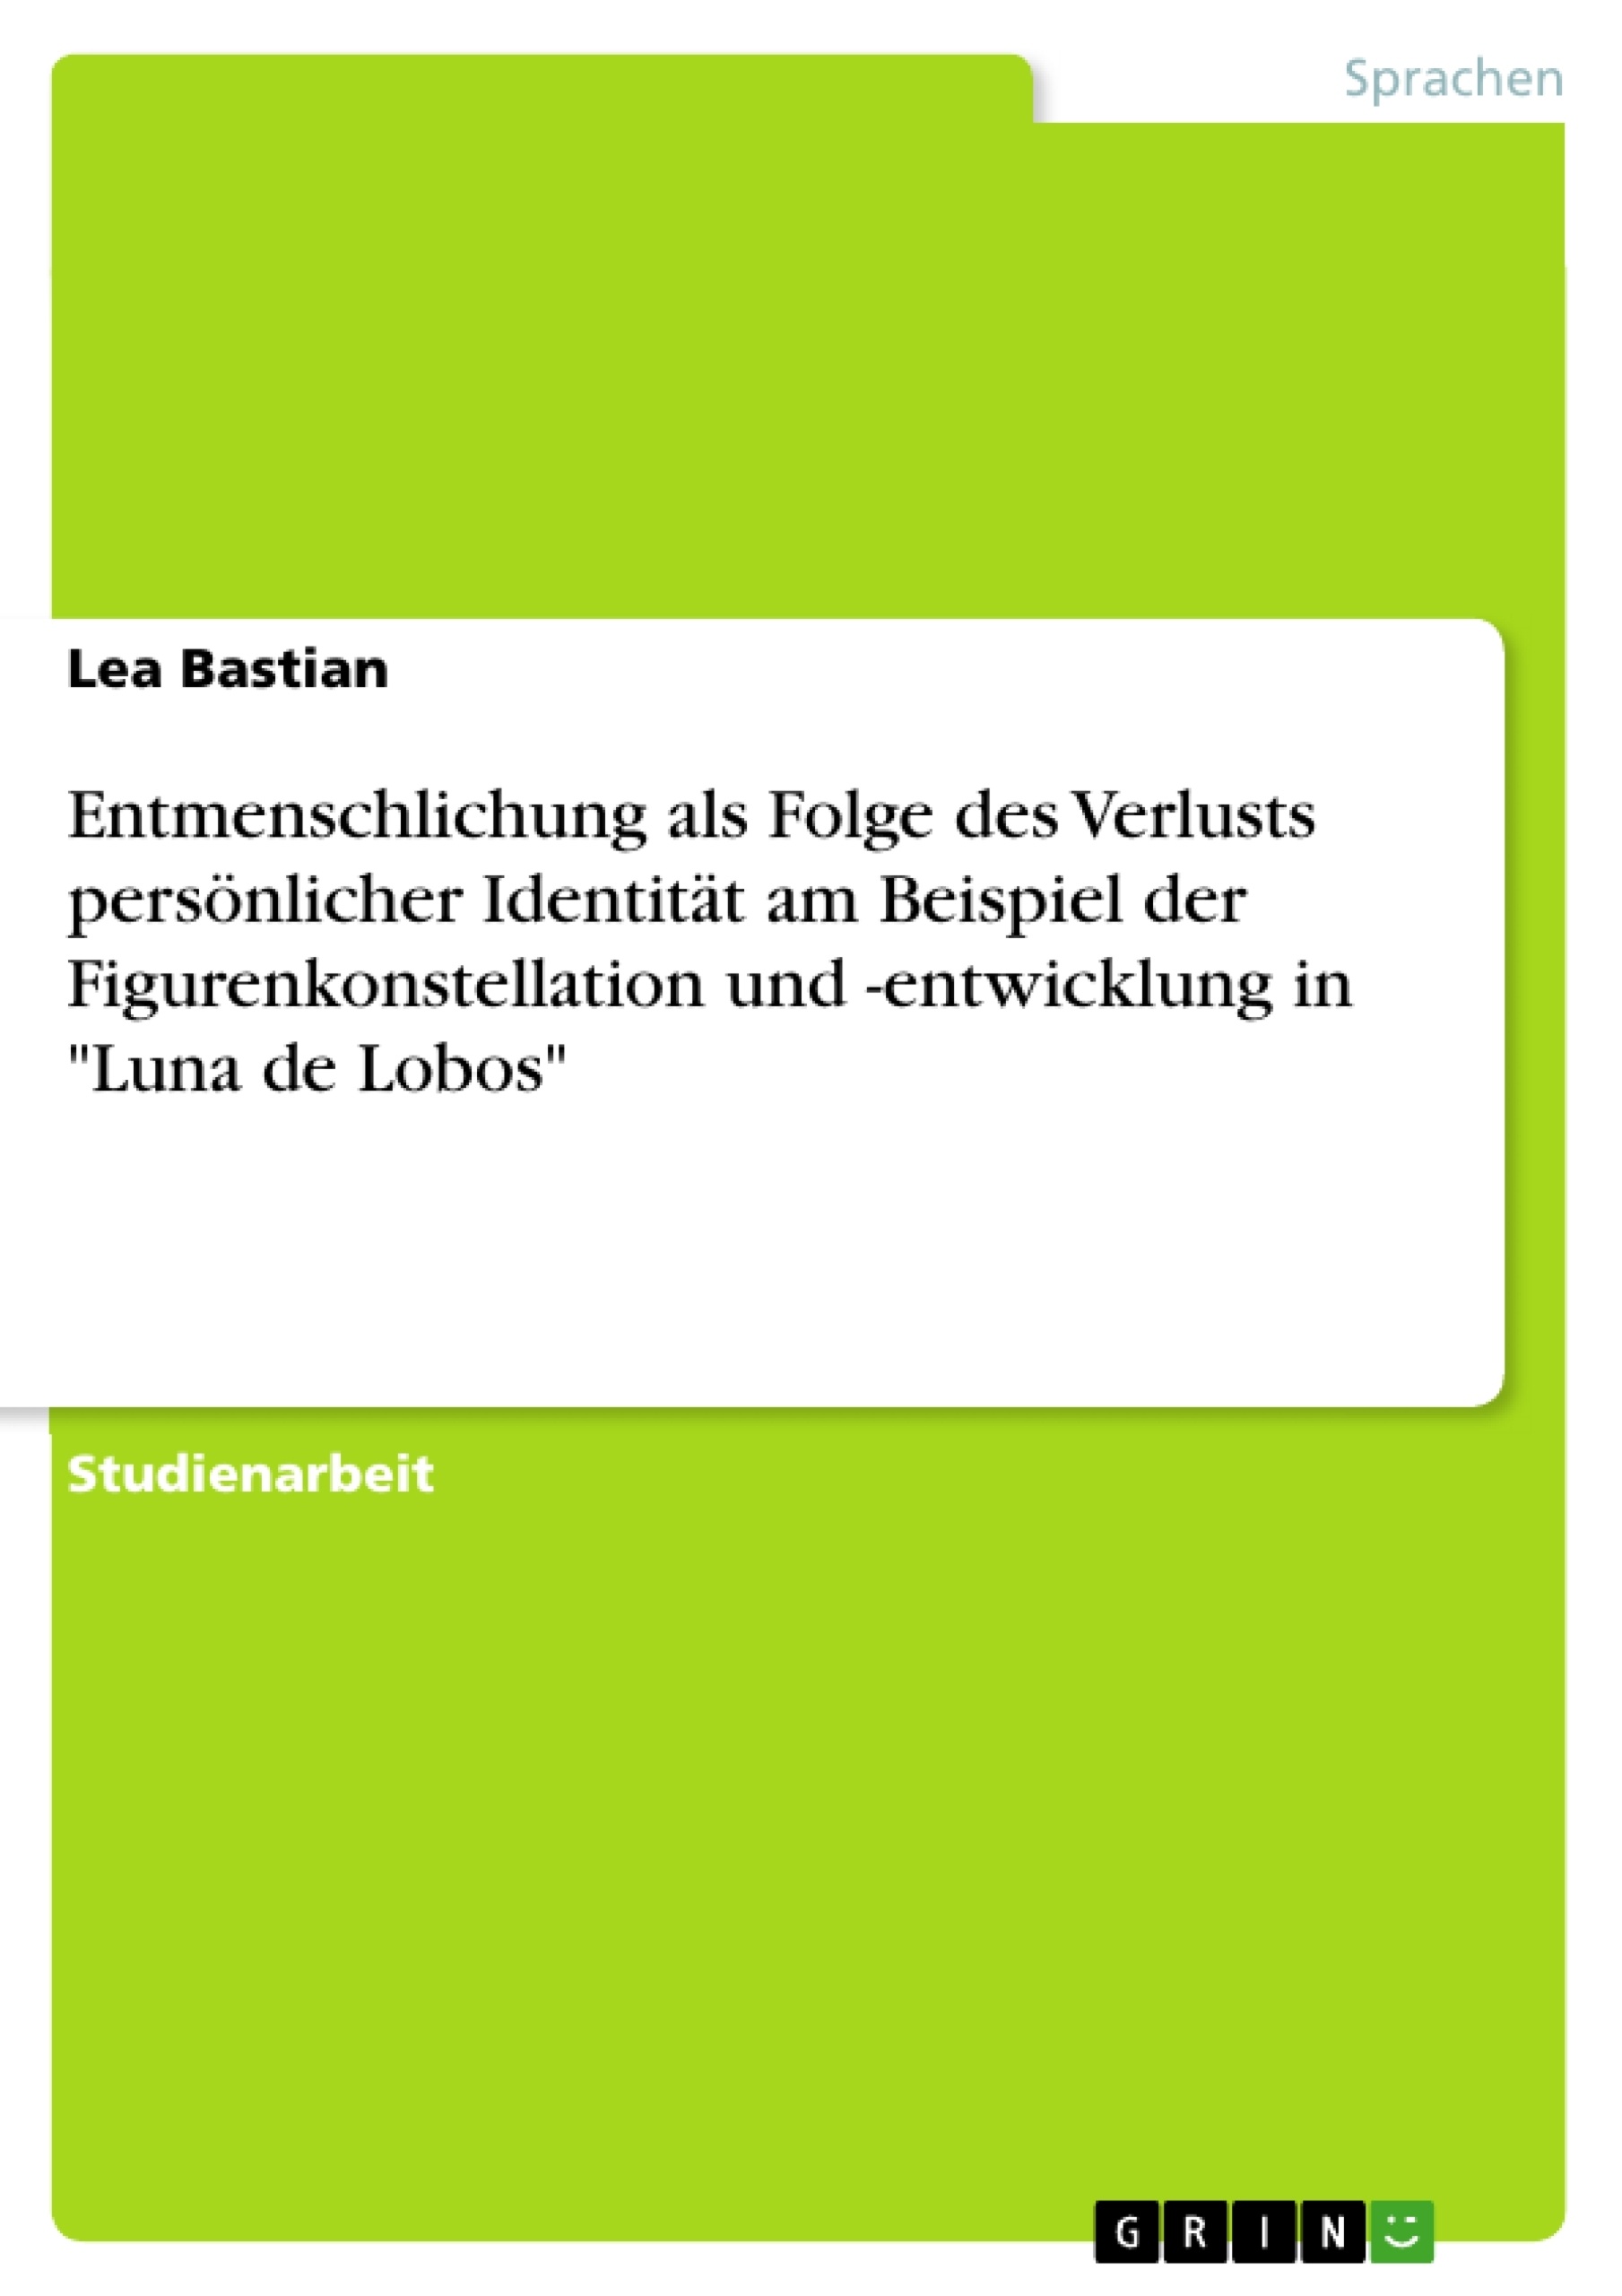 Título: Entmenschlichung als Folge des Verlusts persönlicher Identität am Beispiel der Figurenkonstellation und -entwicklung in "Luna de Lobos"